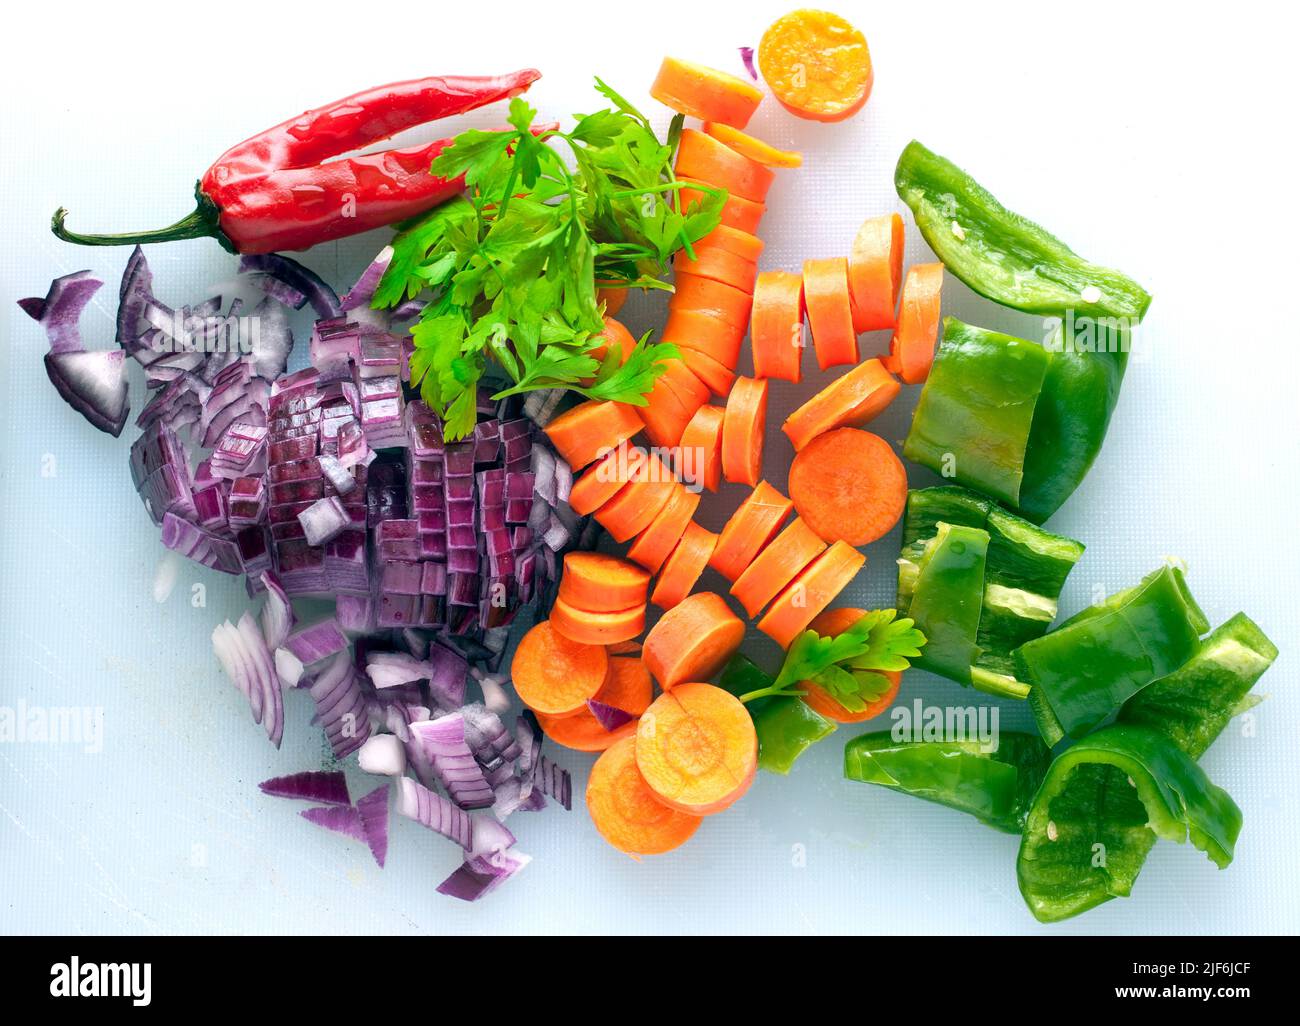 ingrédients de cuisson de légumes hachés Banque D'Images